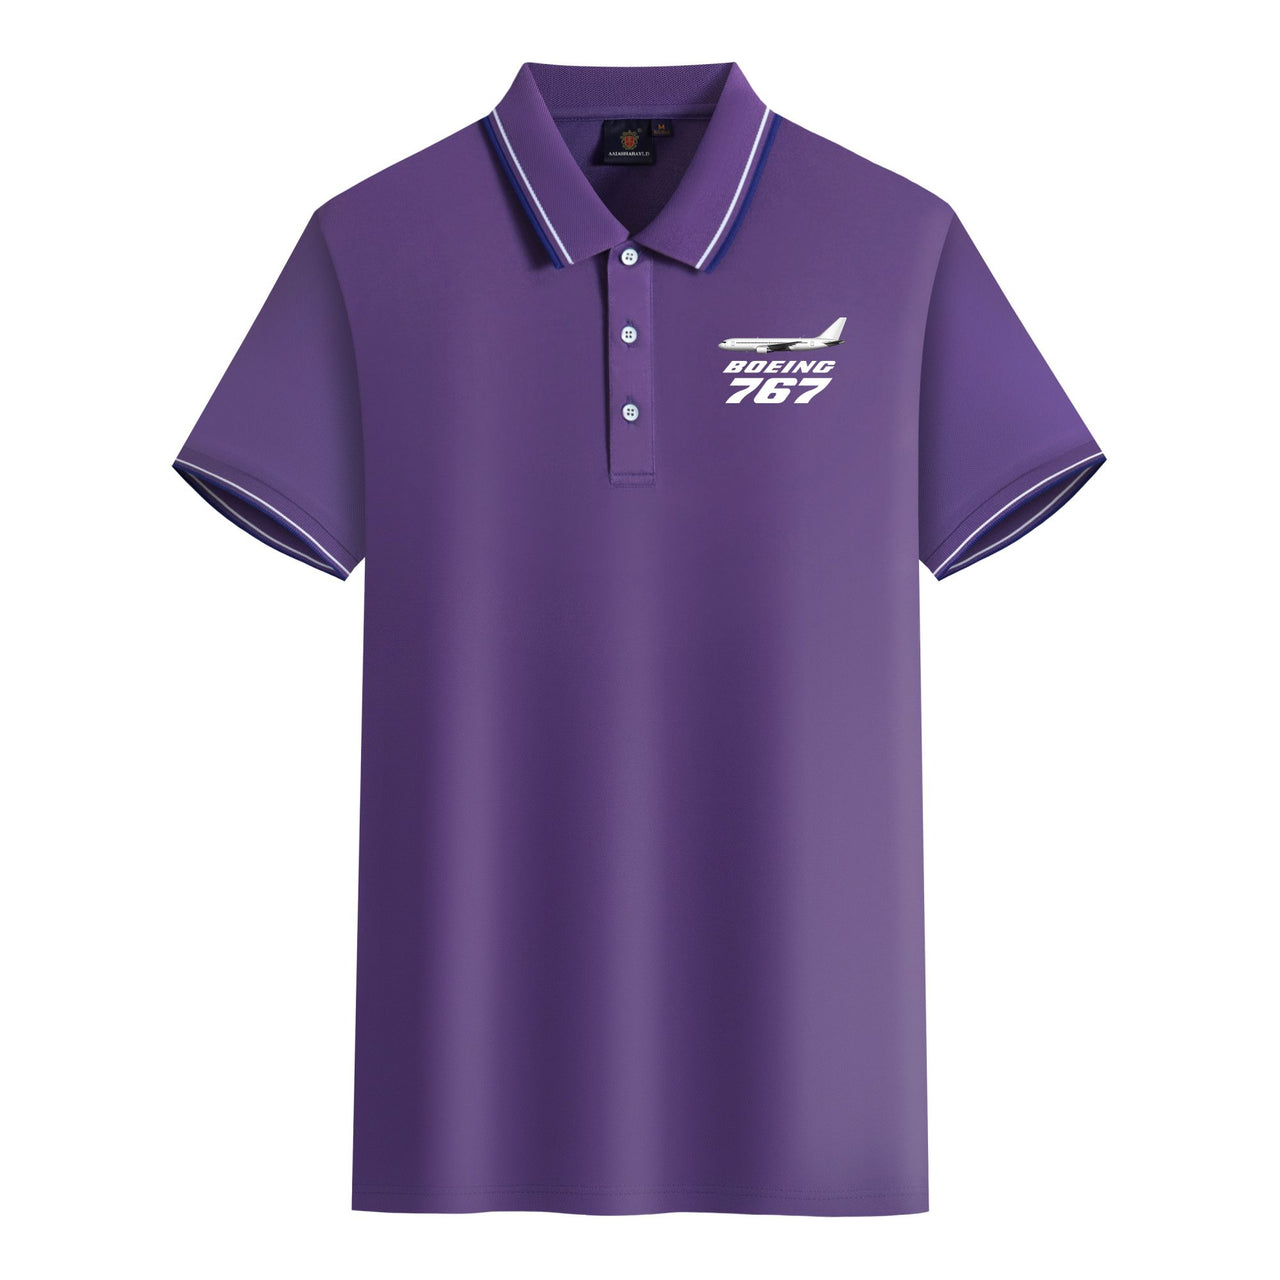 The Boeing 767 Designed Stylish Polo T-Shirts